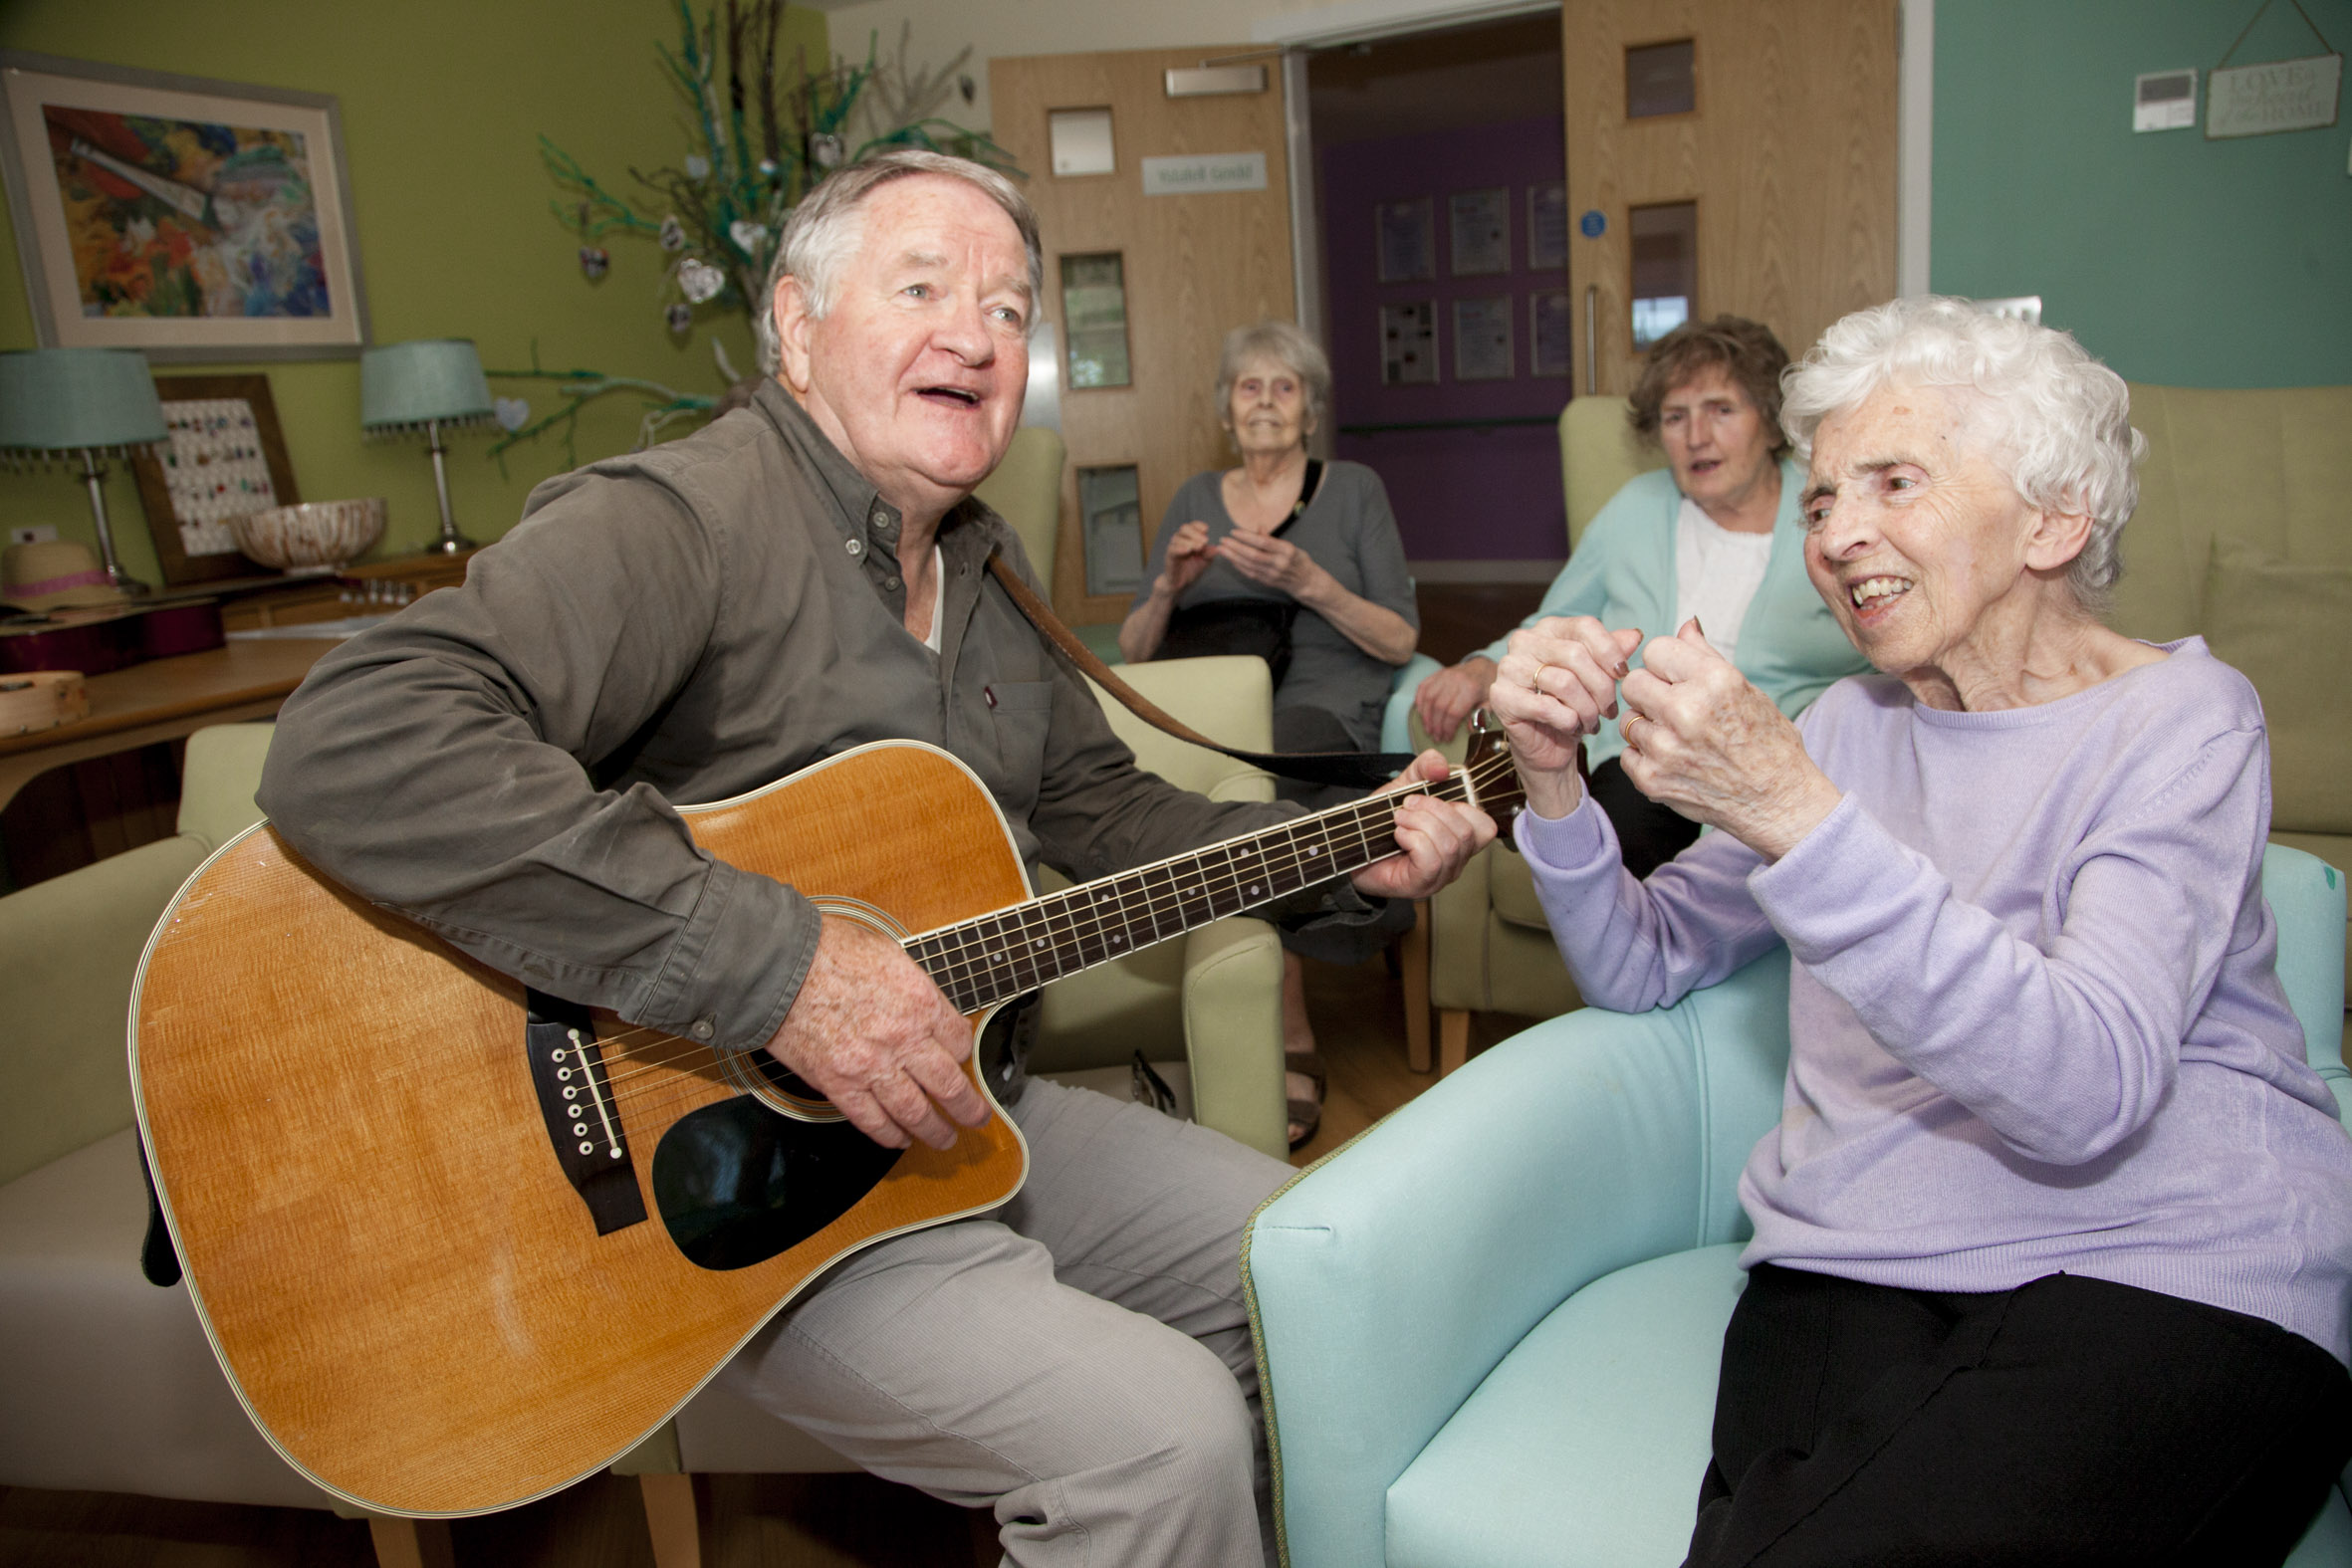 Folk singing legend unlocks memories of people with dementia with his songs